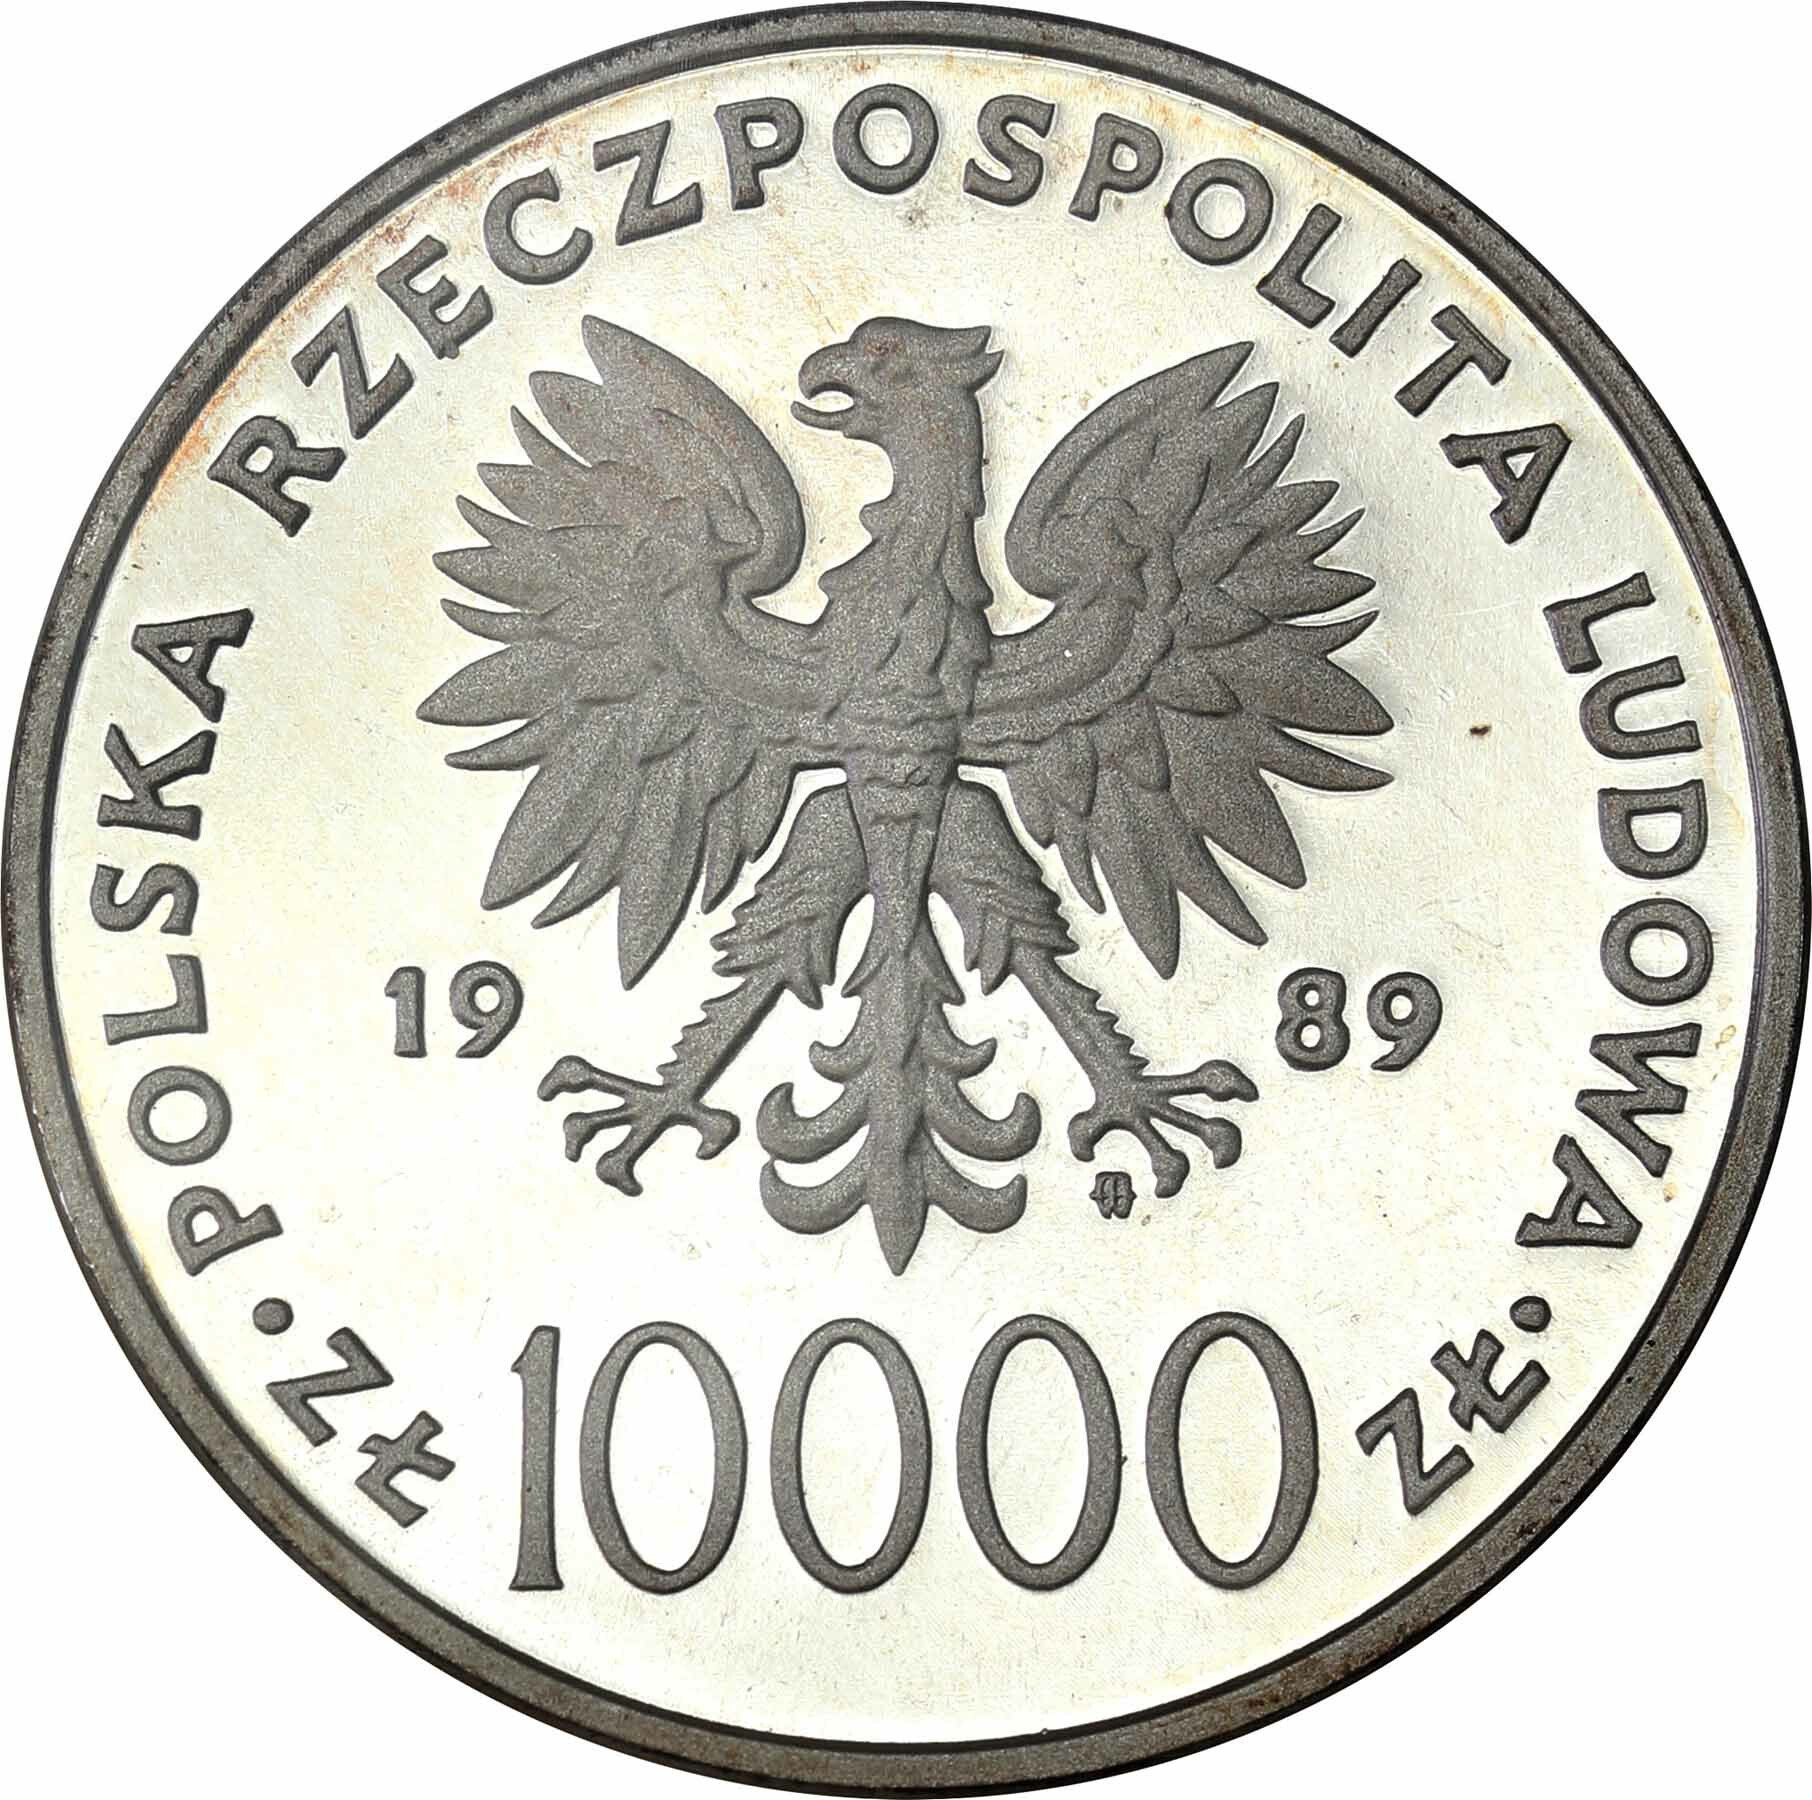 PRL. 10.000 złotych 1989 Jan Paweł II Kratka PCG PR70